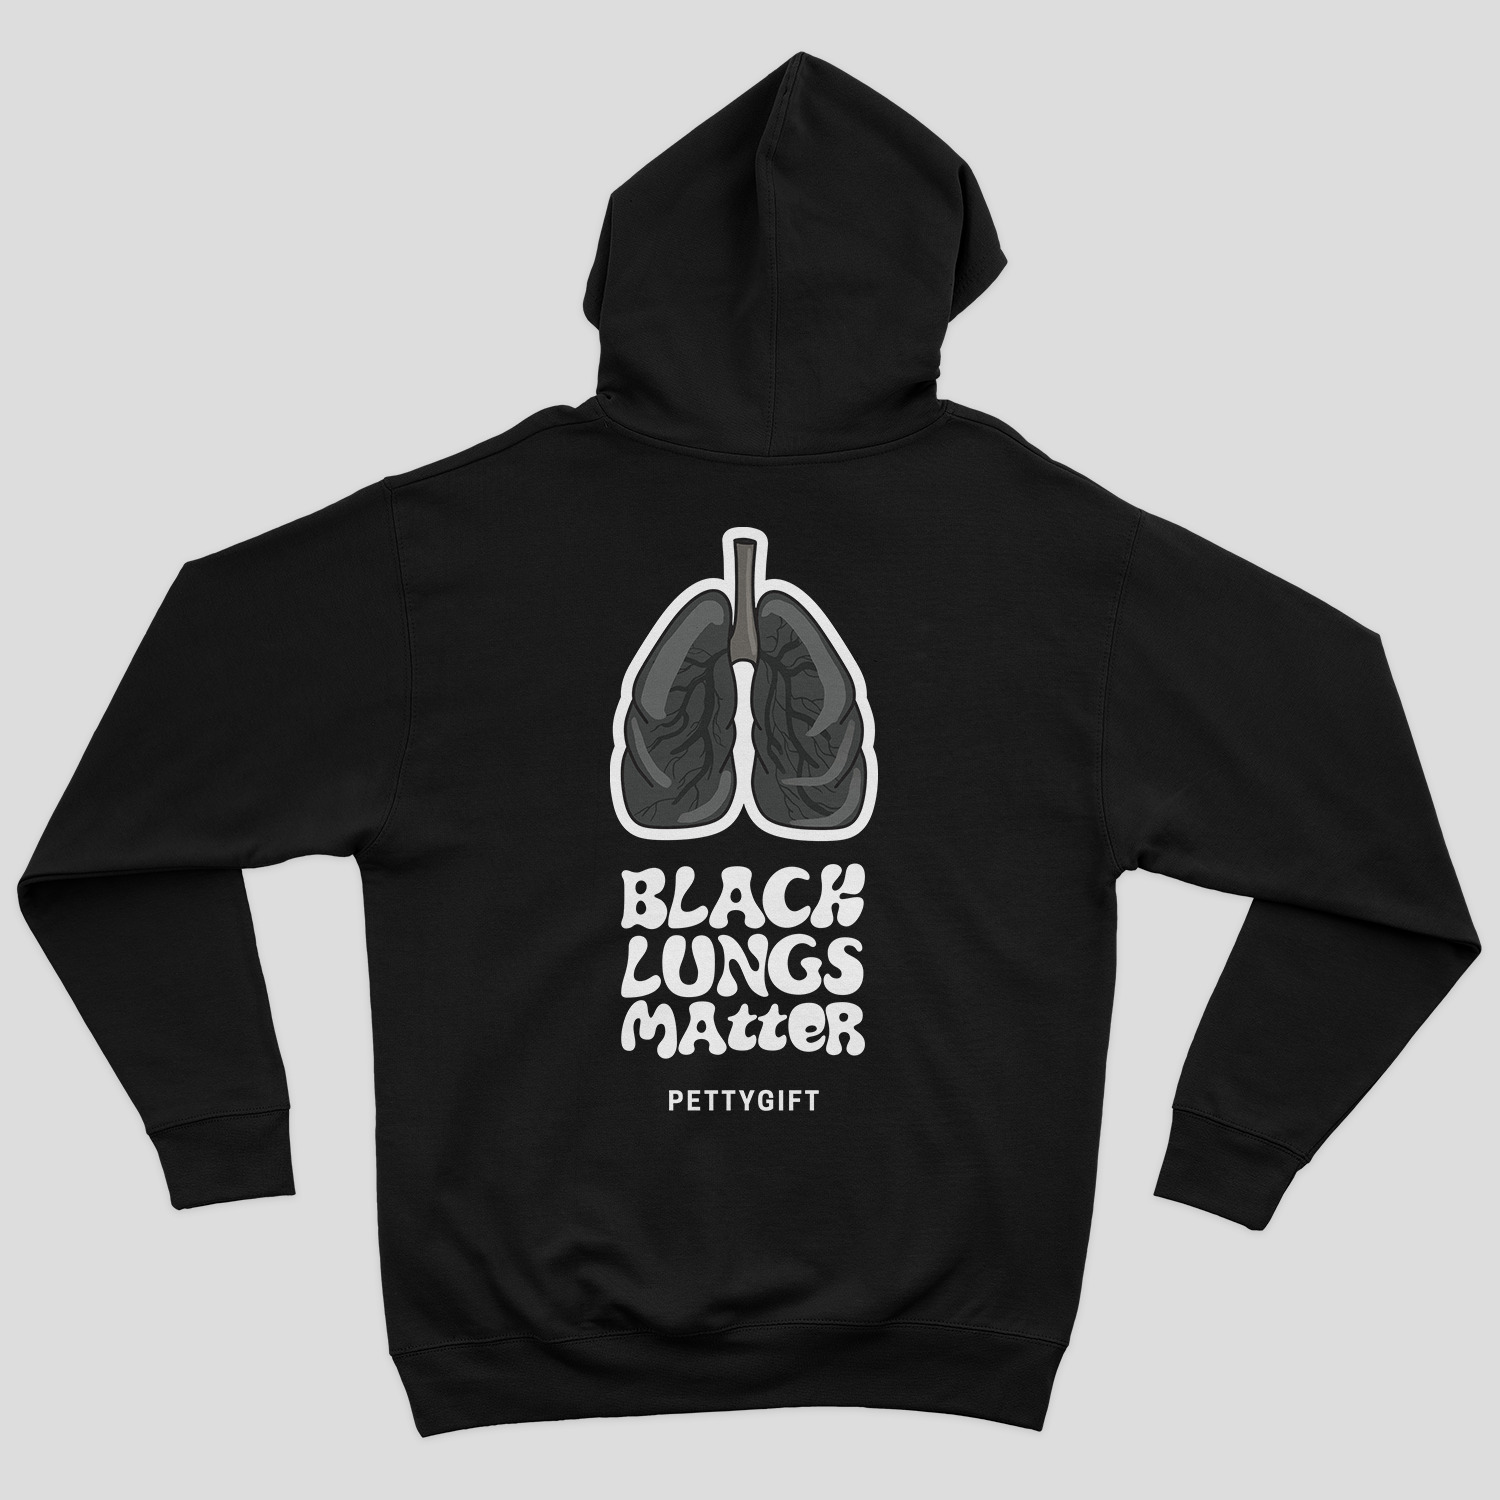 Black lungs matter (Back) - Hoodie - Man